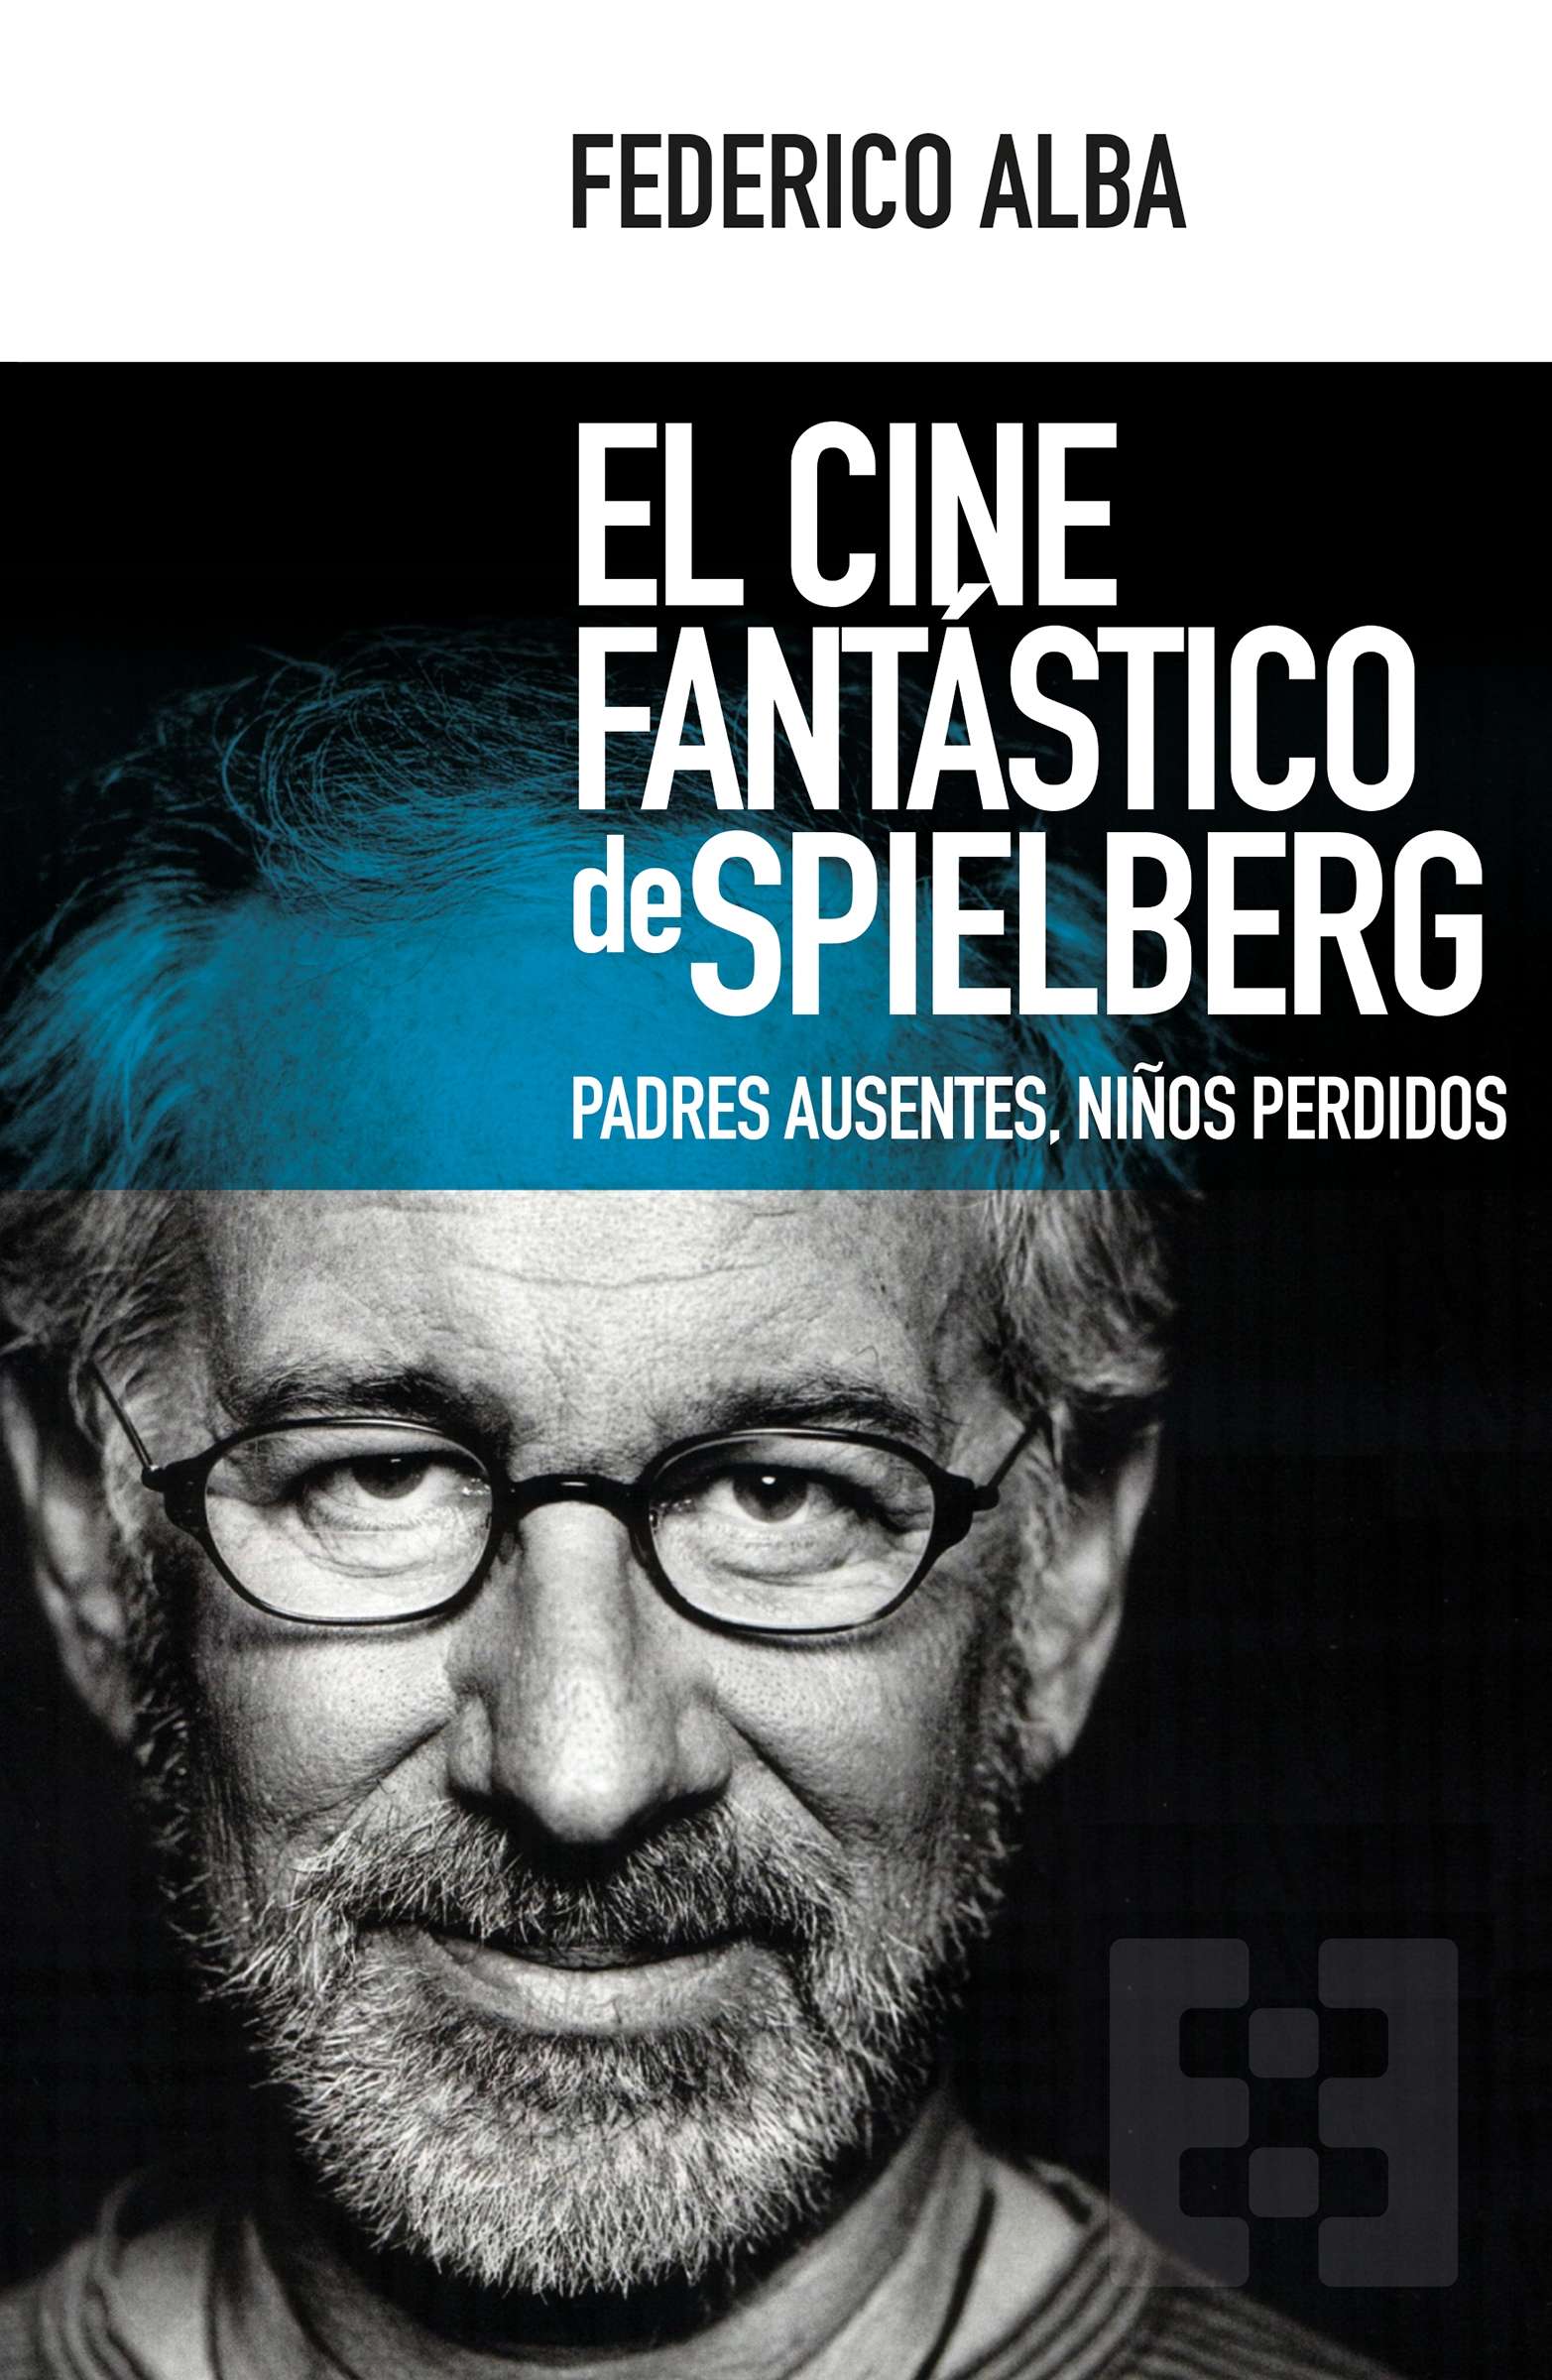 El cine fantástico de Spielberg